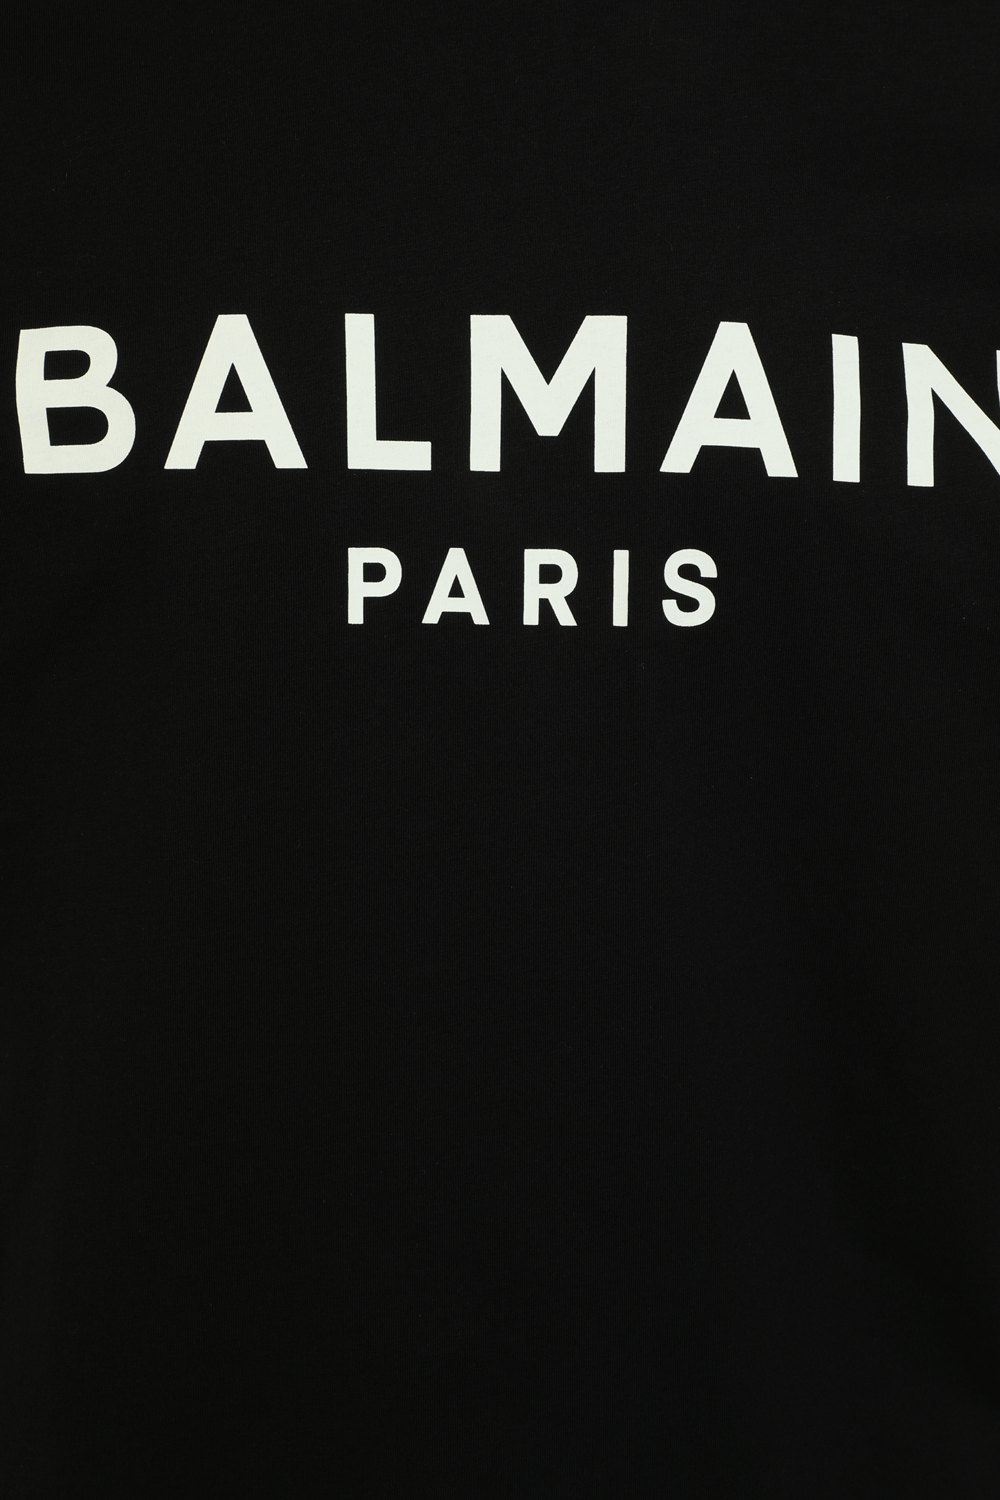 חולצת טי עם הדפס לוגו BALMAIN